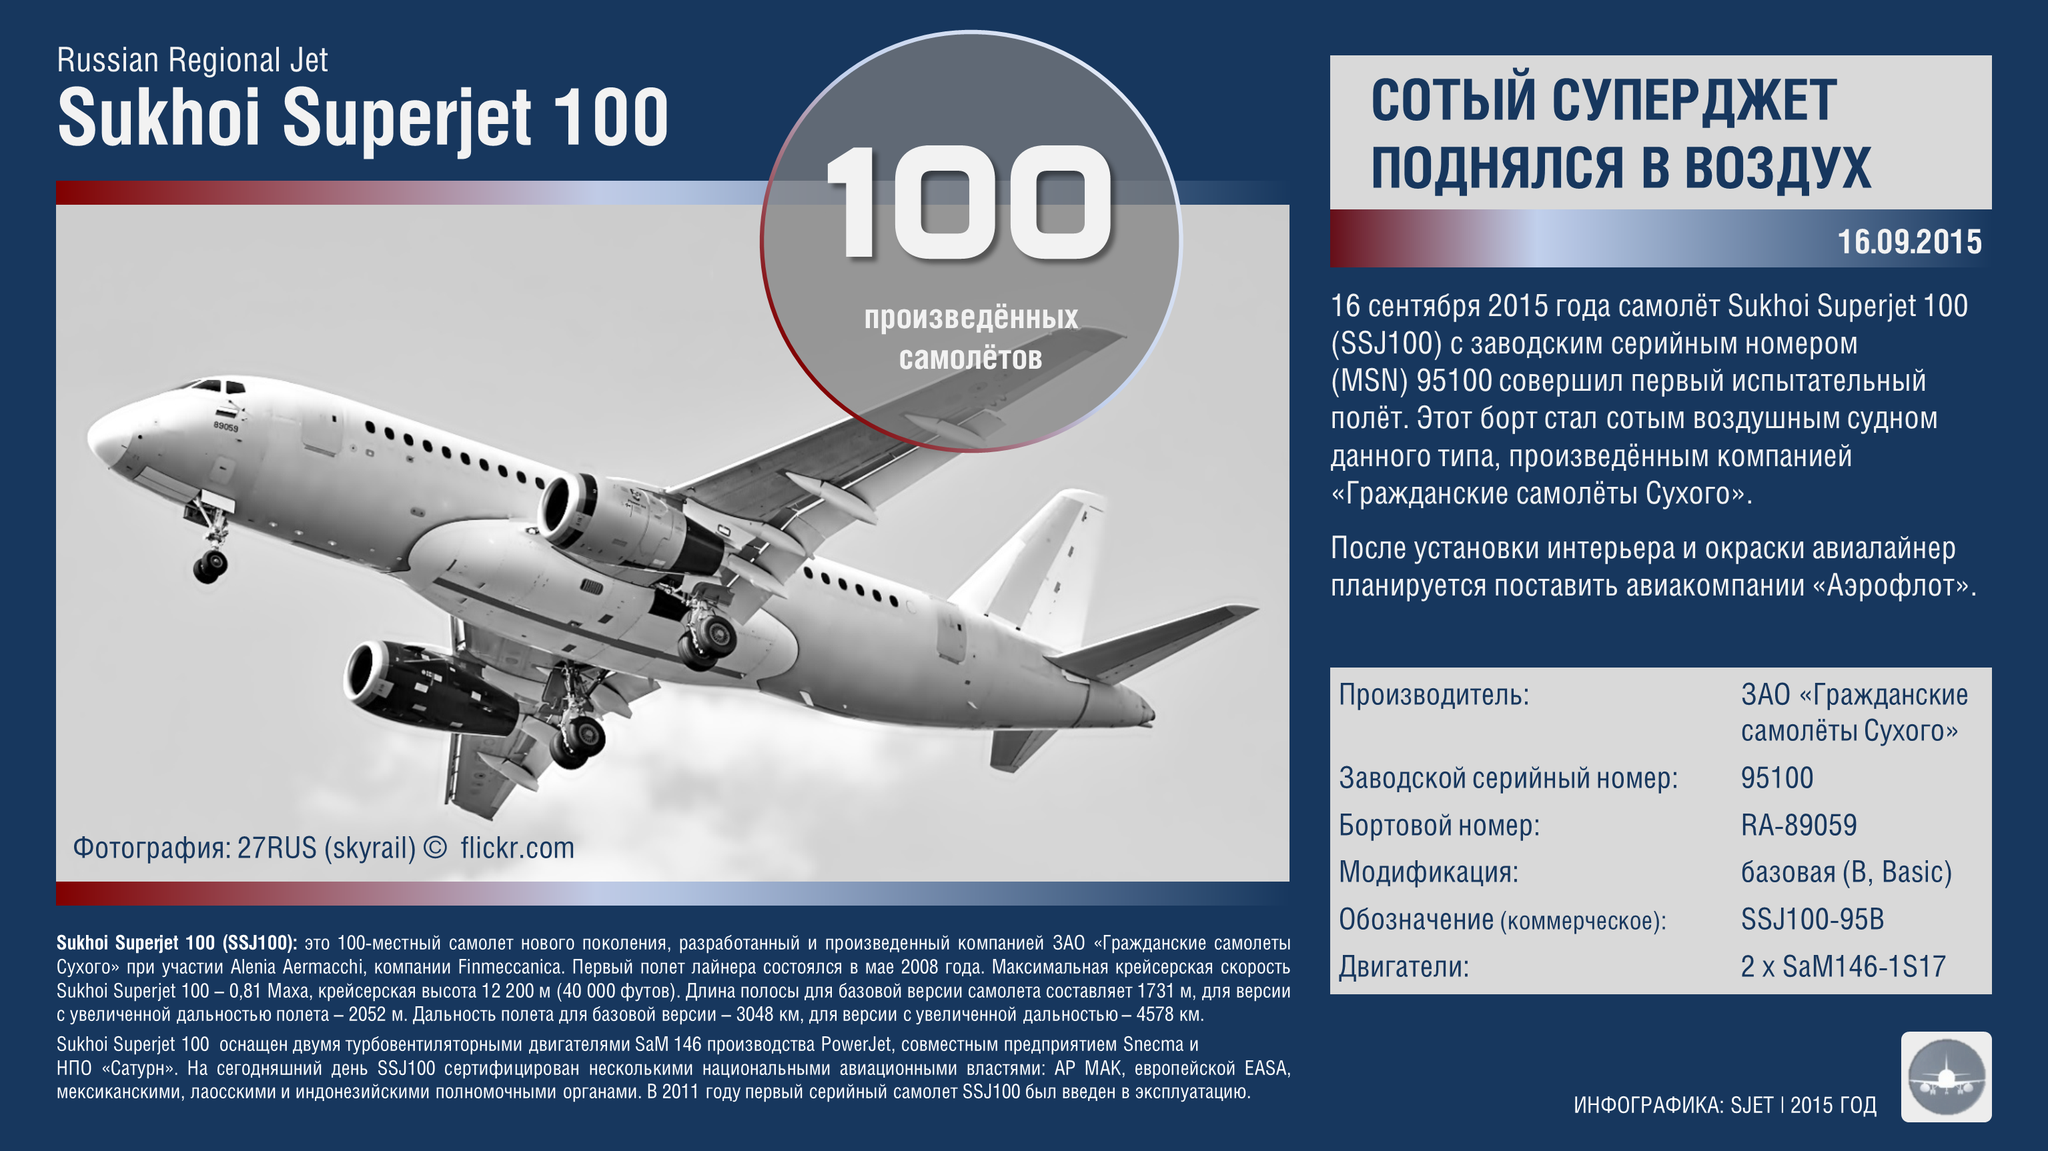 Sukhoi superjet 100 azimut – описание и лучшие места в авиалайнере